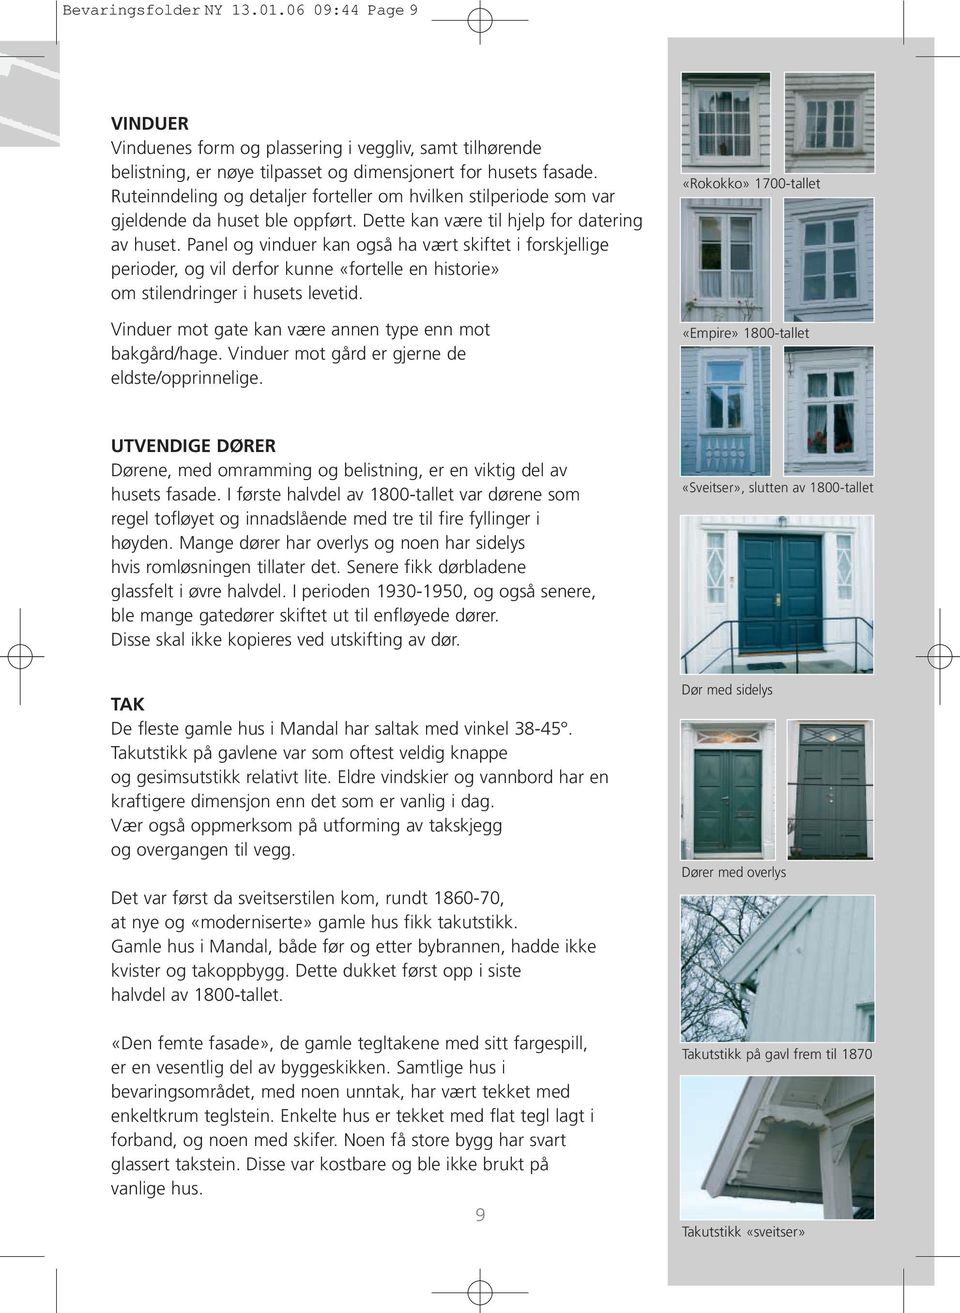 Panel og vinduer kan også ha vært skiftet i forskjellige perioder, og vil derfor kunne «fortelle en historie» om stilendringer i husets levetid.